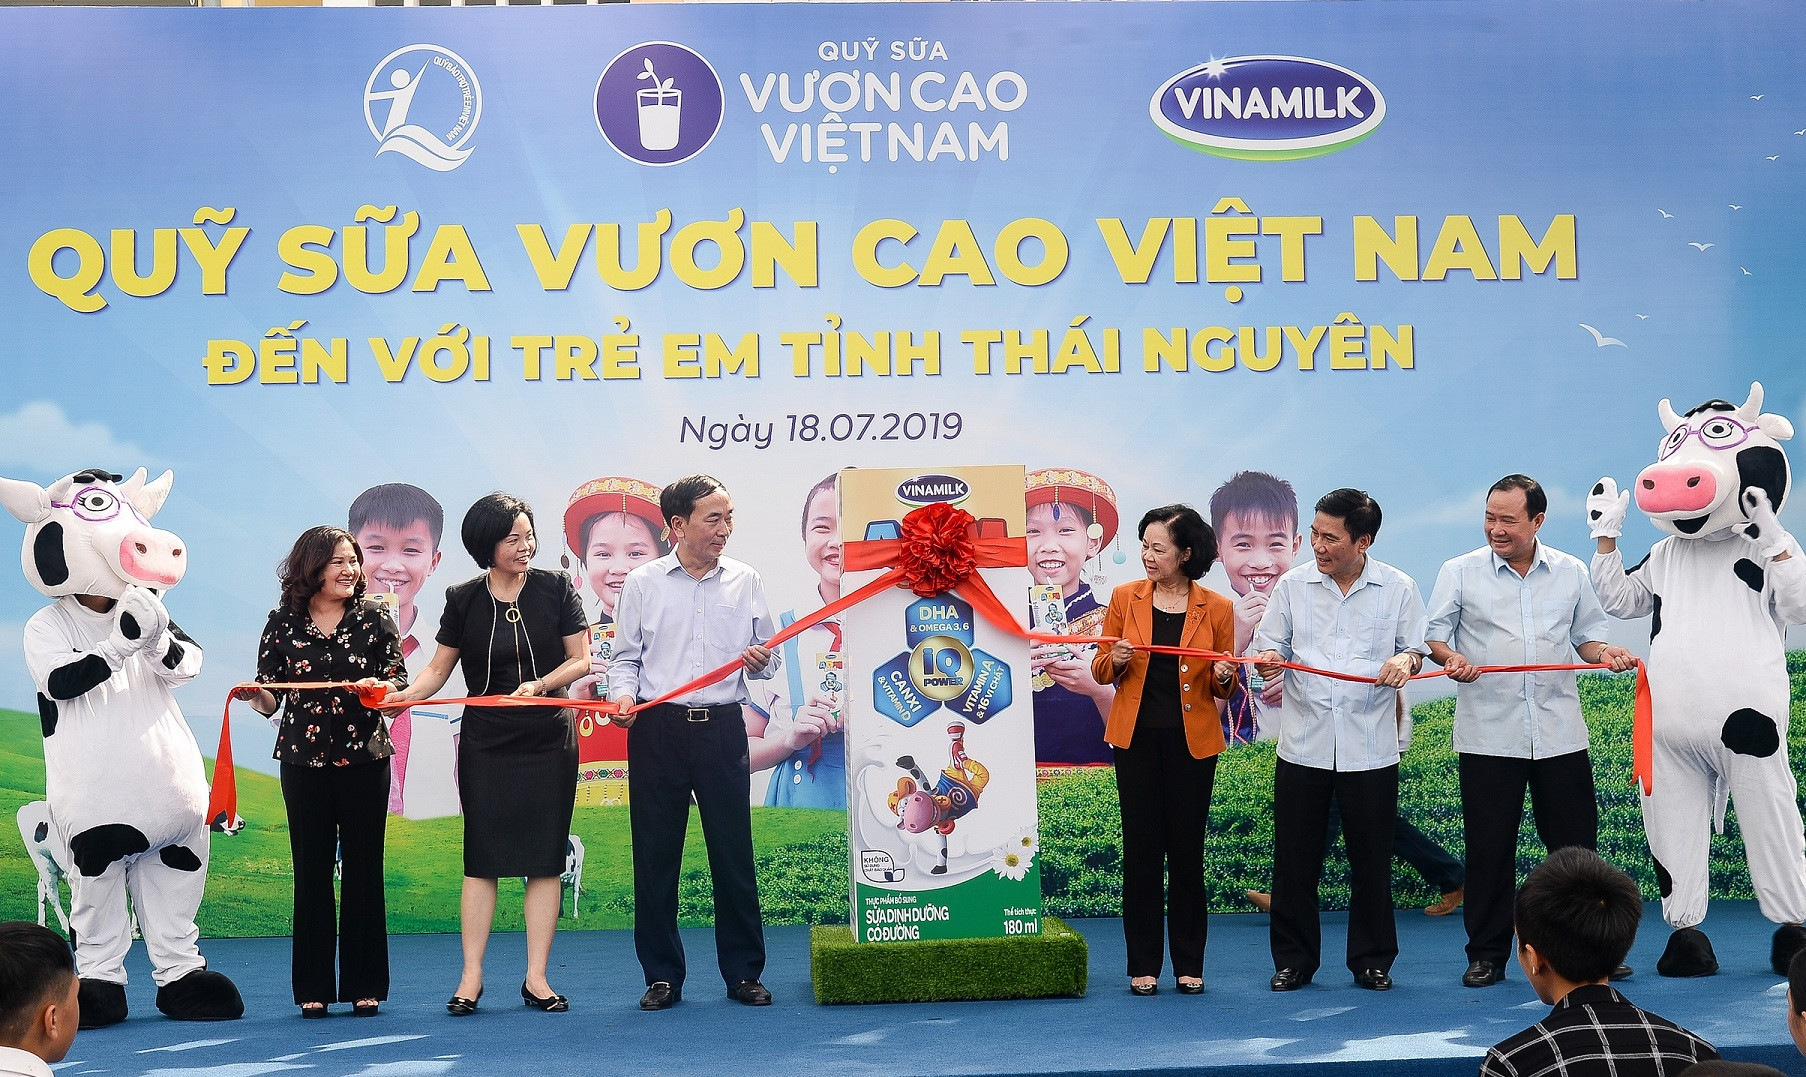 Quỹ sữa vươn cao Việt Nam và Vinamilk chung ta vì trẻ em Thái Nguyên.